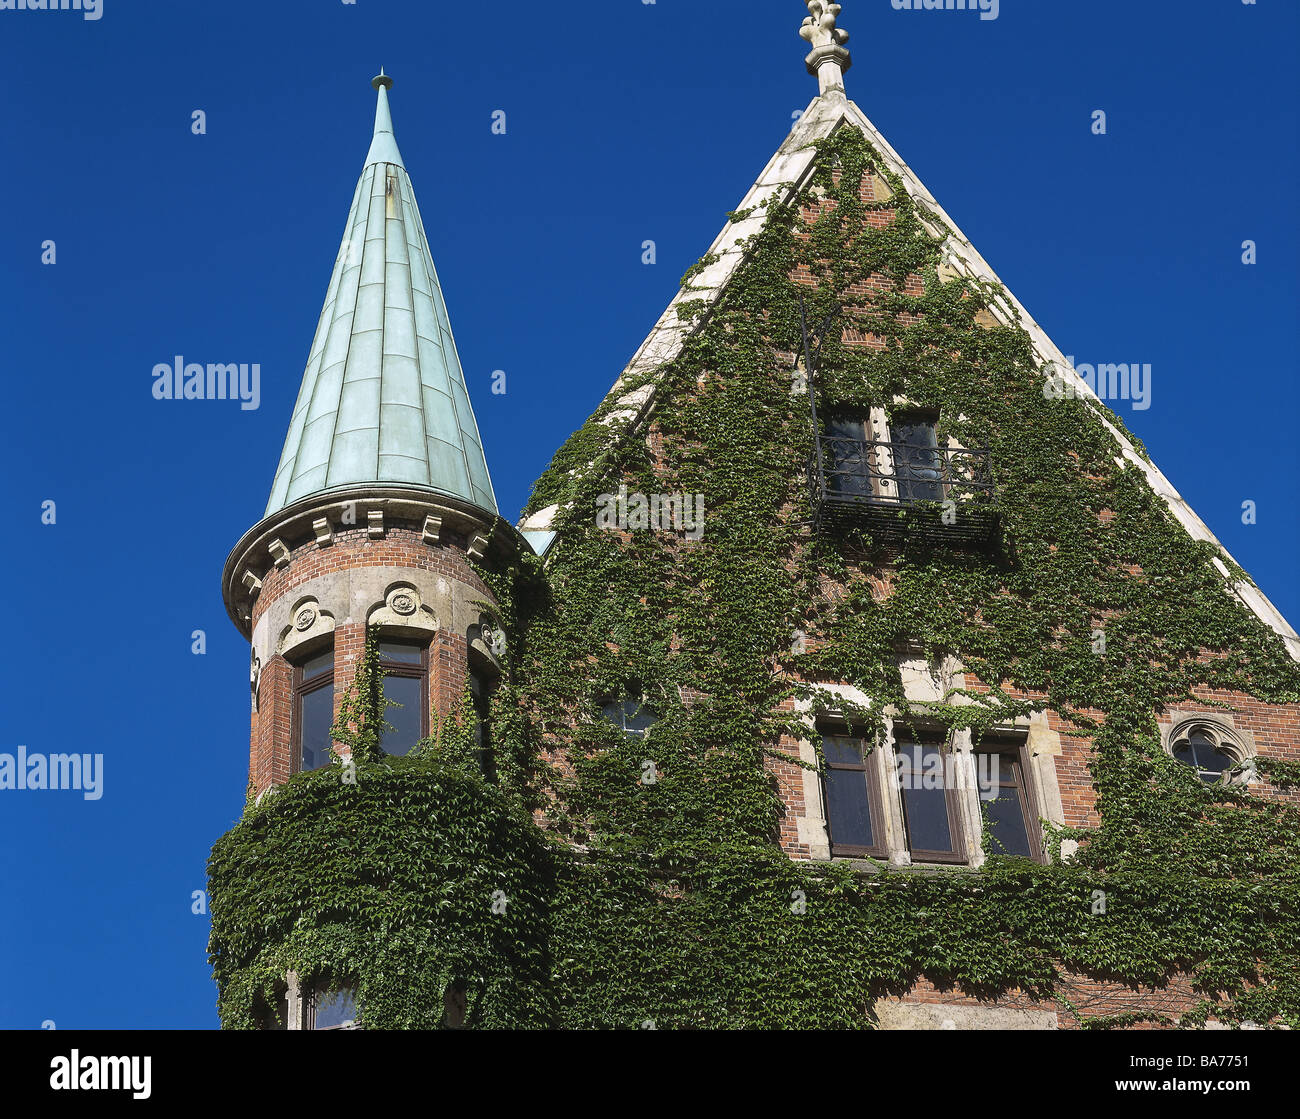 La Germania dal porto di Amburgo-edifici della città vecchia torre di dettaglio facciata cresce su city città anseatica di storage città-porto-city house Foto Stock